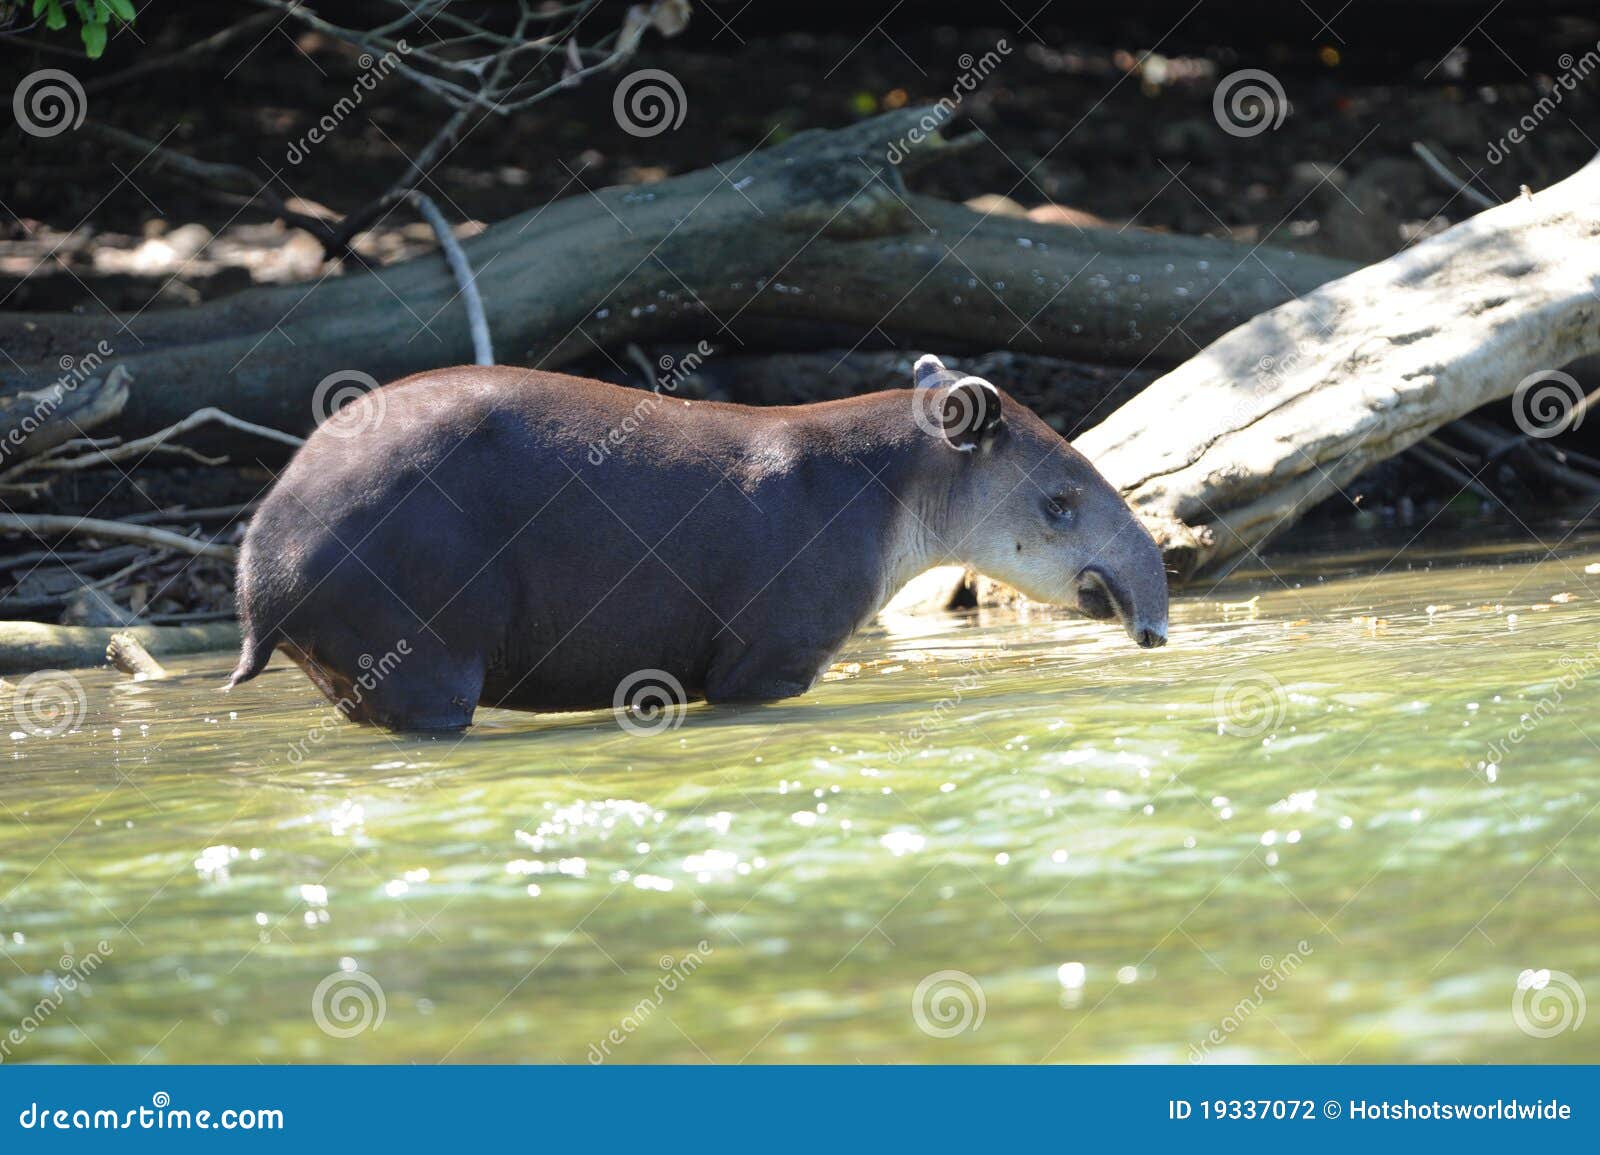 wild tapir in river,corcovado ,costa rica